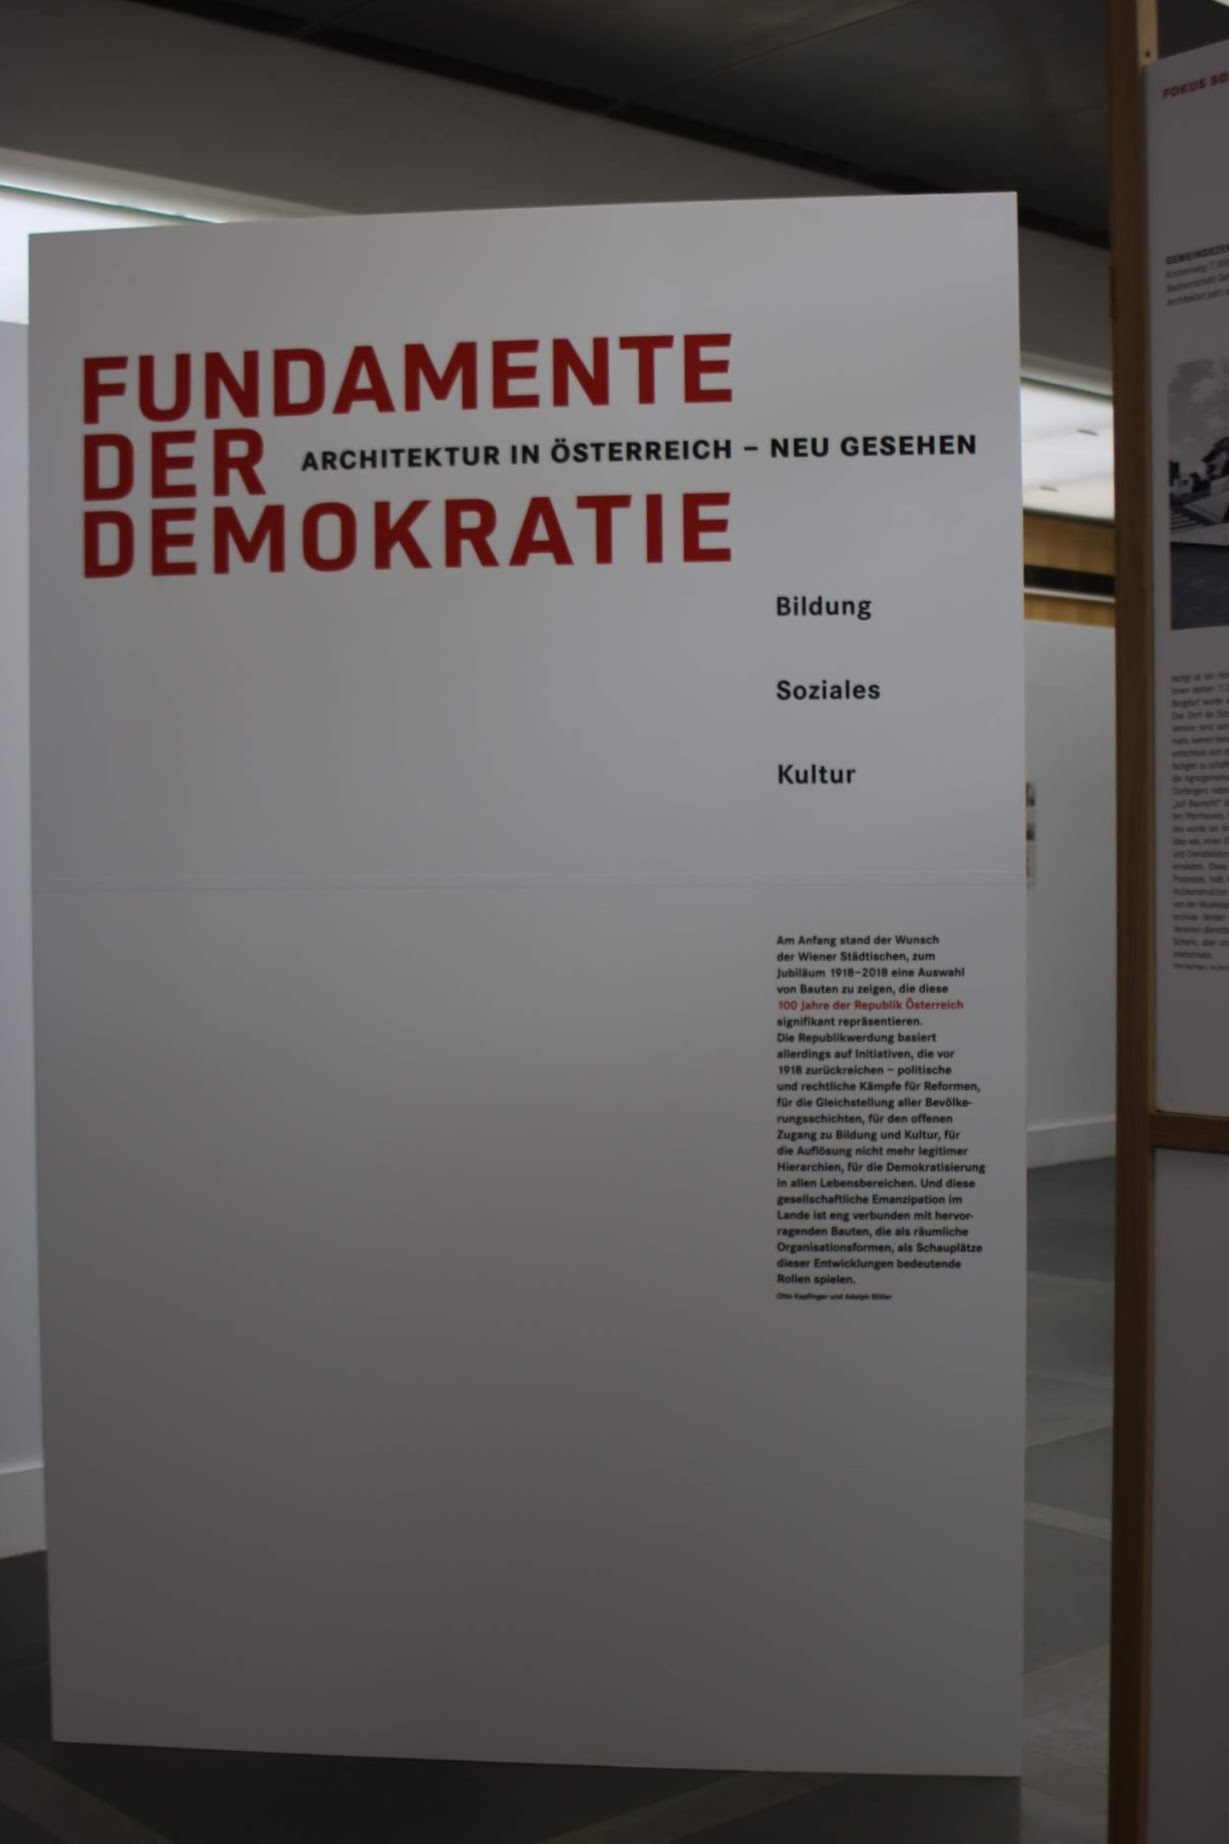 Eine spannende Ausstellung im Wiener Ringturm: Fundamente der Demokratie